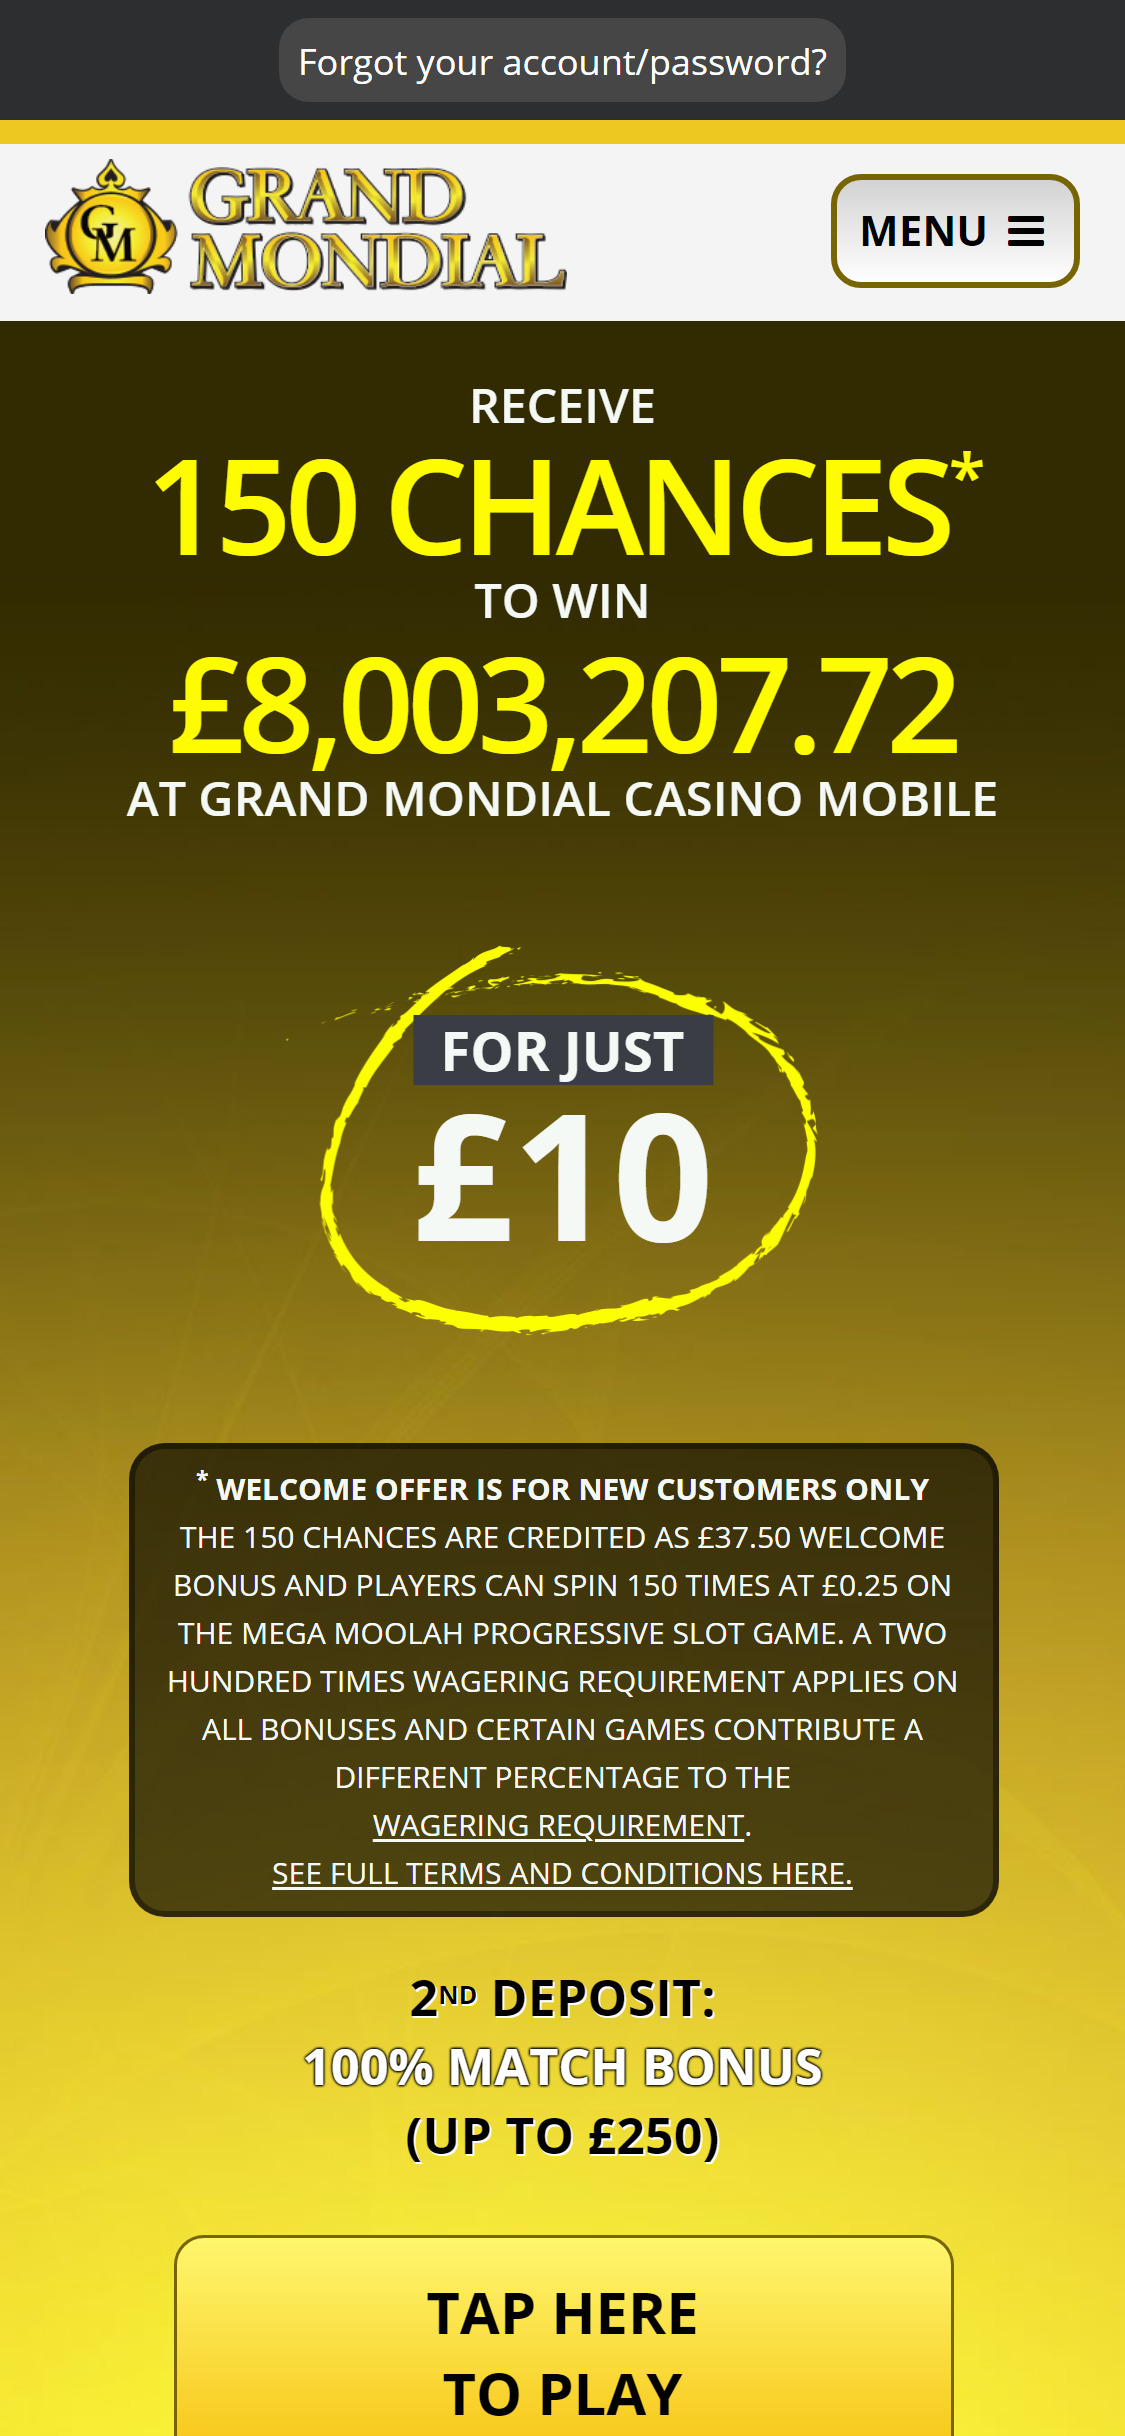 Grand Mondial Casino EU Mobile Review